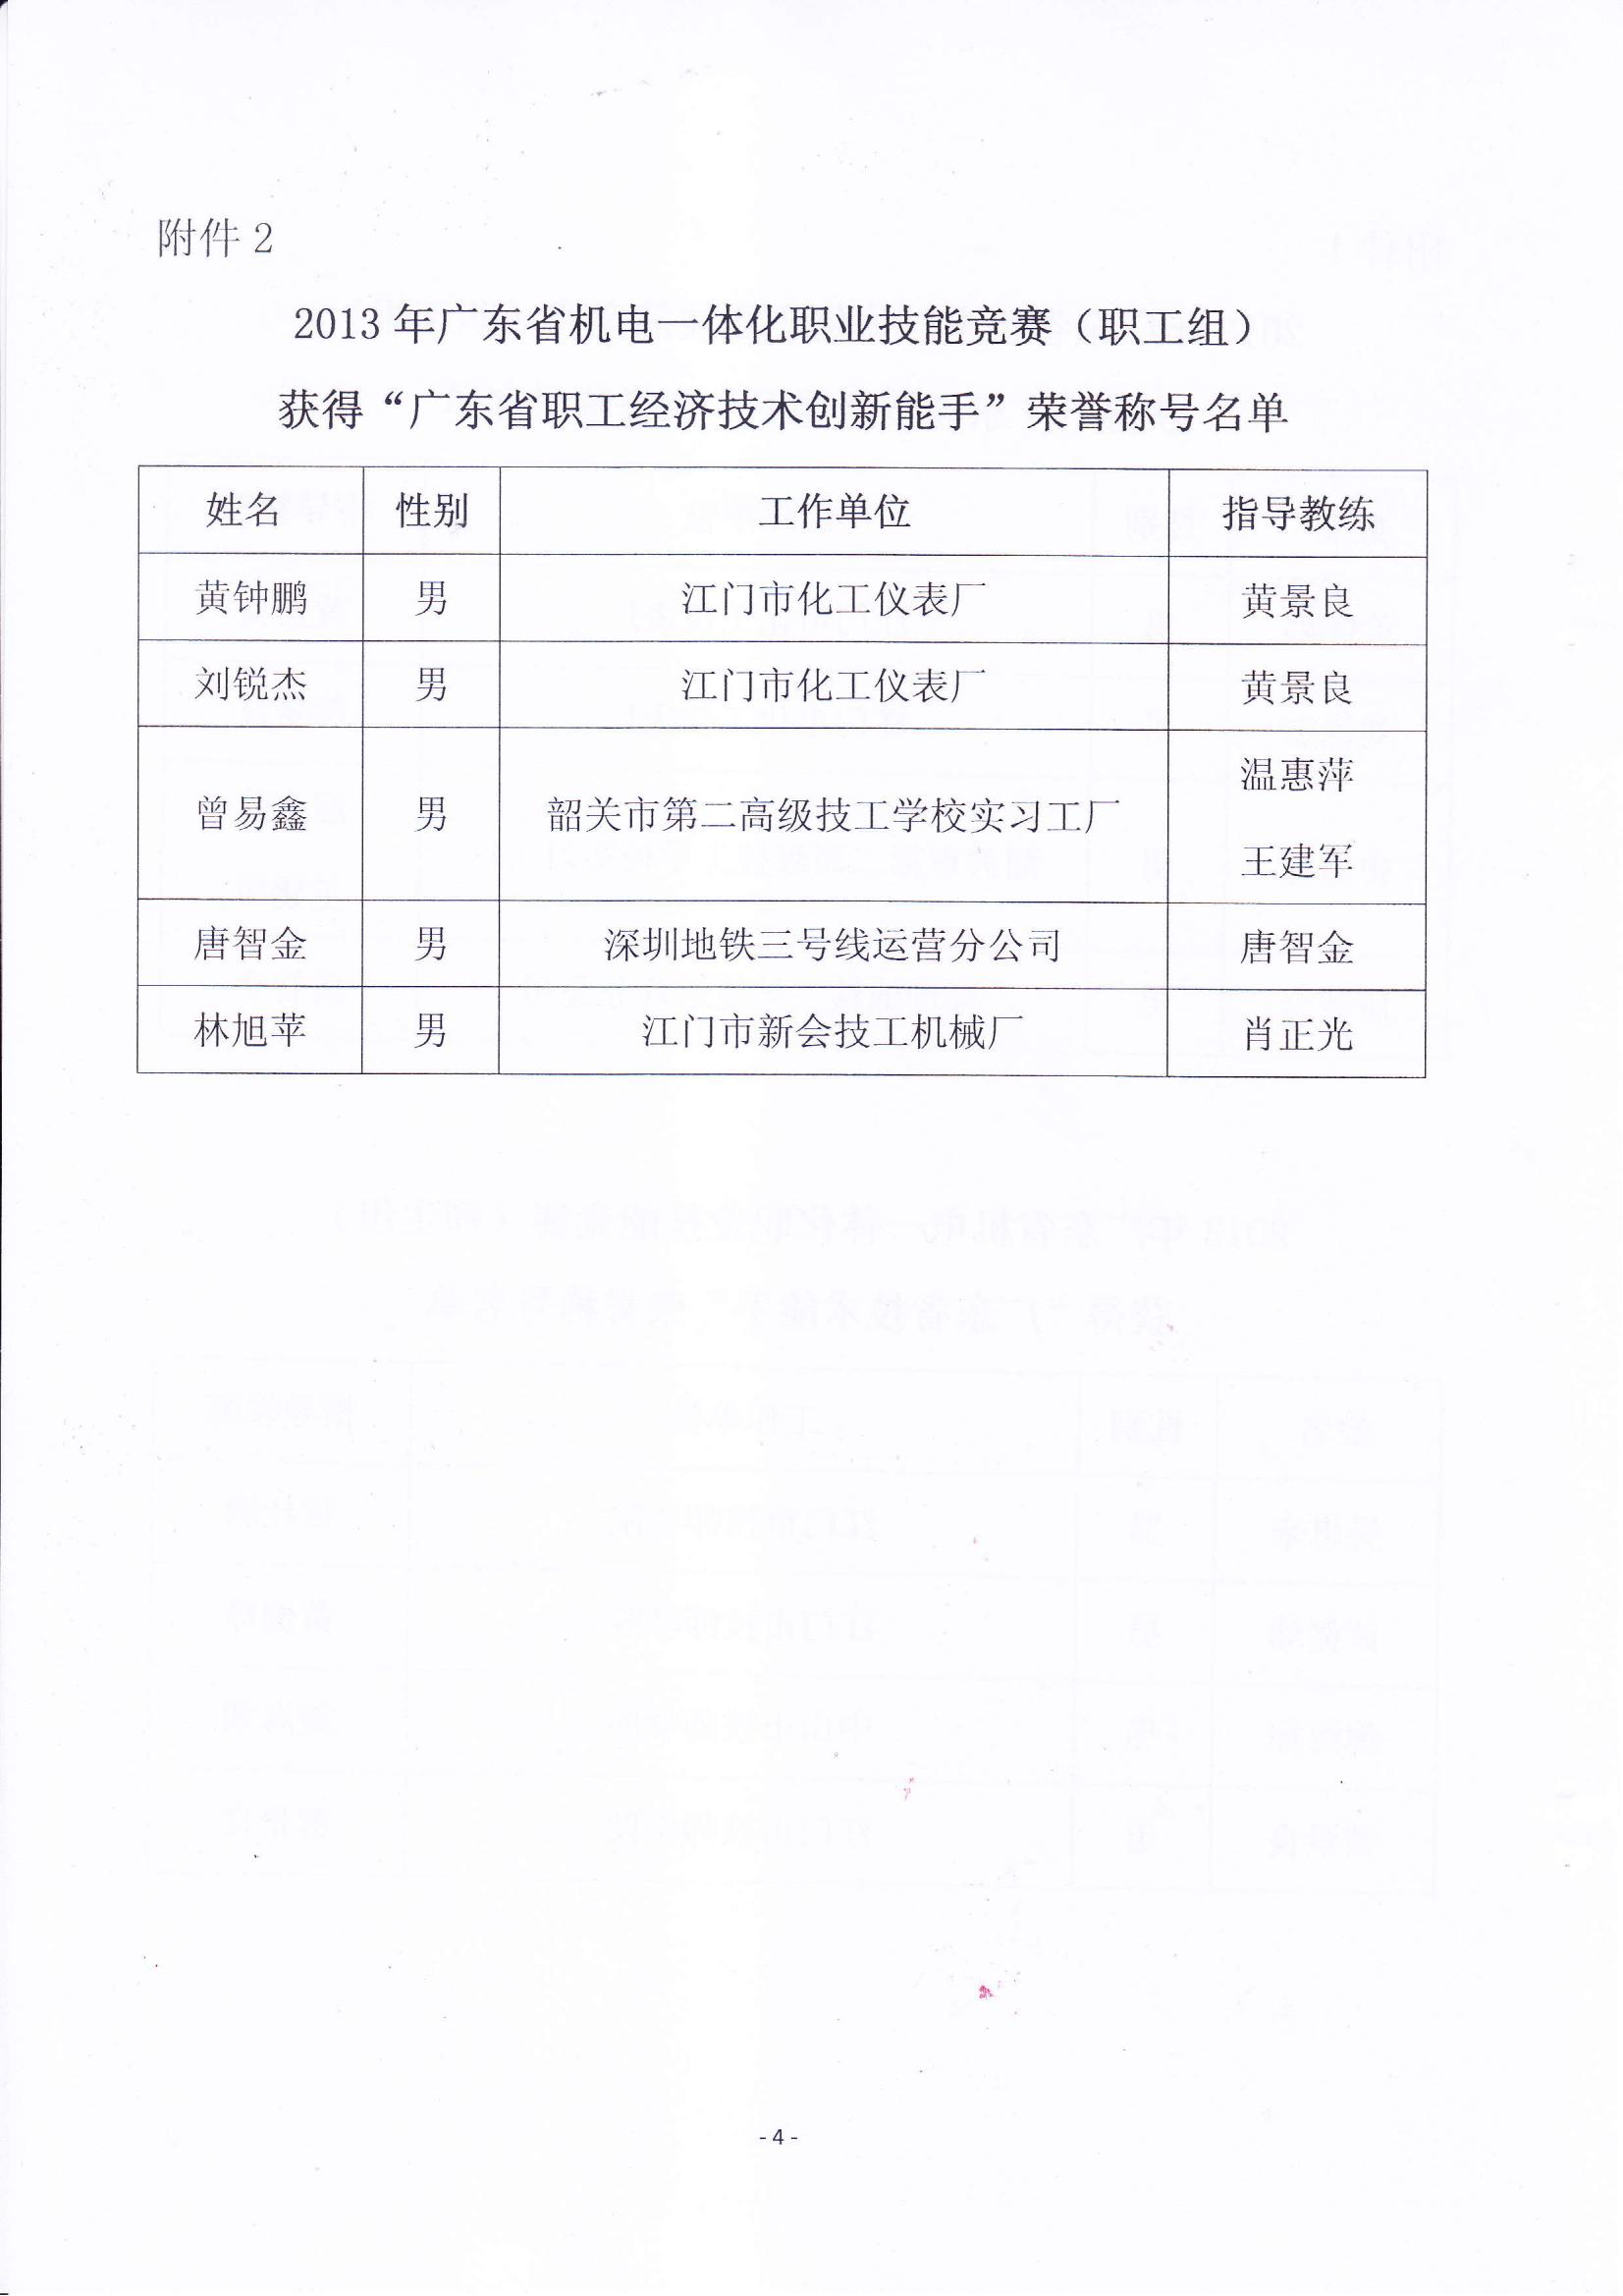 关于表彰2013年广东省机电一体化职业技能竞赛获奖人员和单位的通报_03.jpg